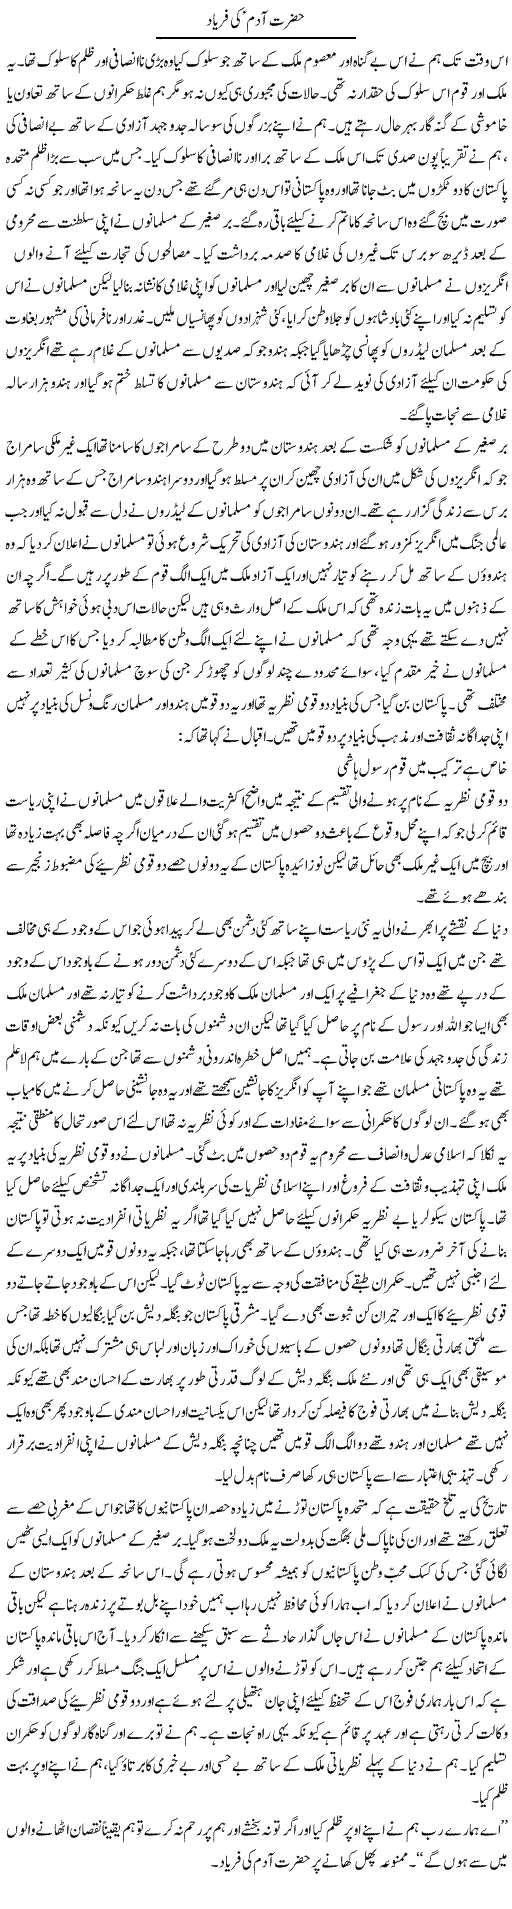 Hazrat Adam Ki Faryad | Abdul Qadir Hassan | Daily Urdu Columns